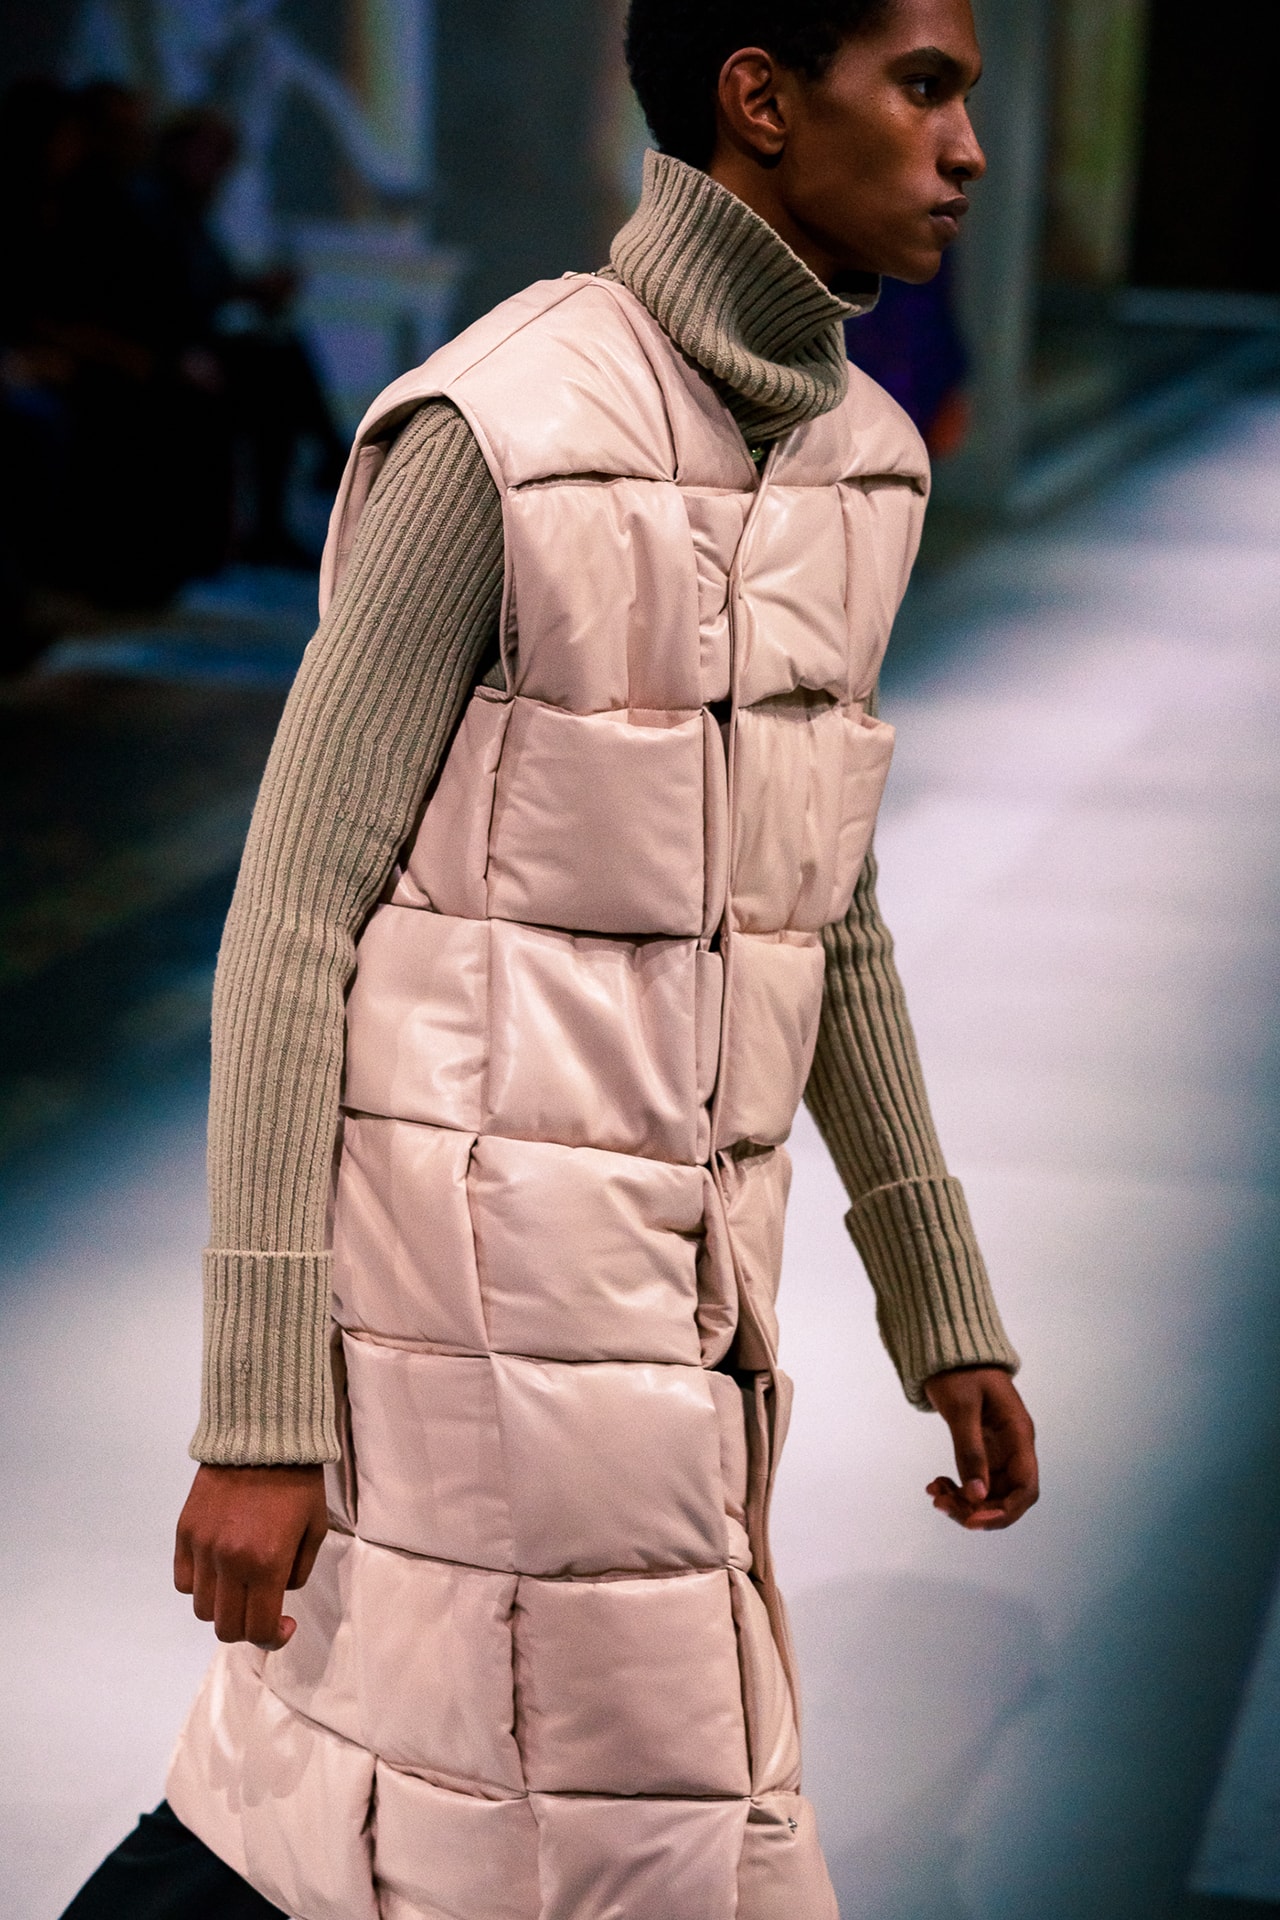 Bottega Veneta Fall Winter 2020 FW20 Runway Show Collection Milan Fashion Week Daniel Lee Beige Intrecciato Coat